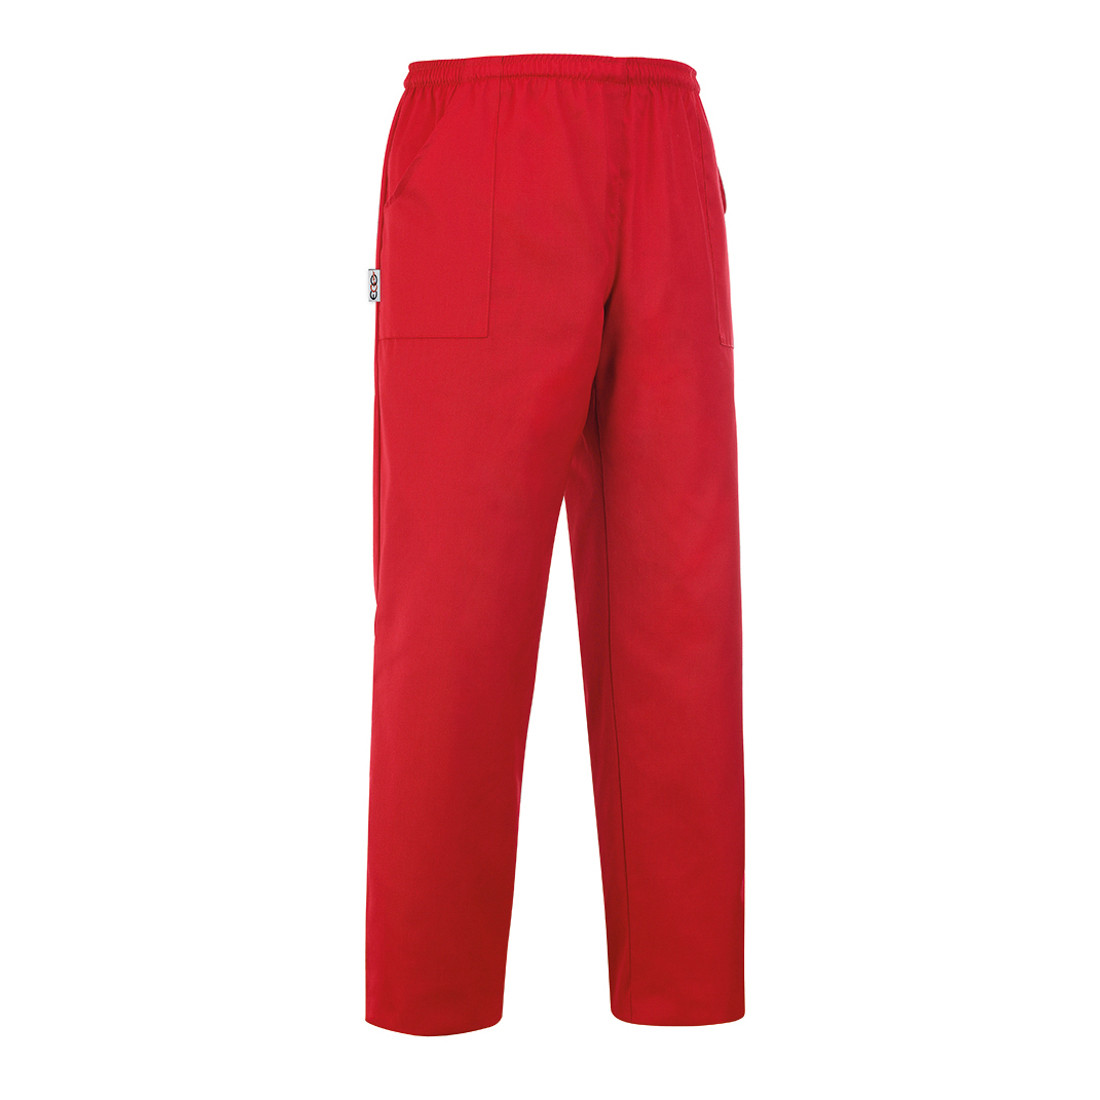 Pantalon Coulisse Pocket - Les vêtements de protection